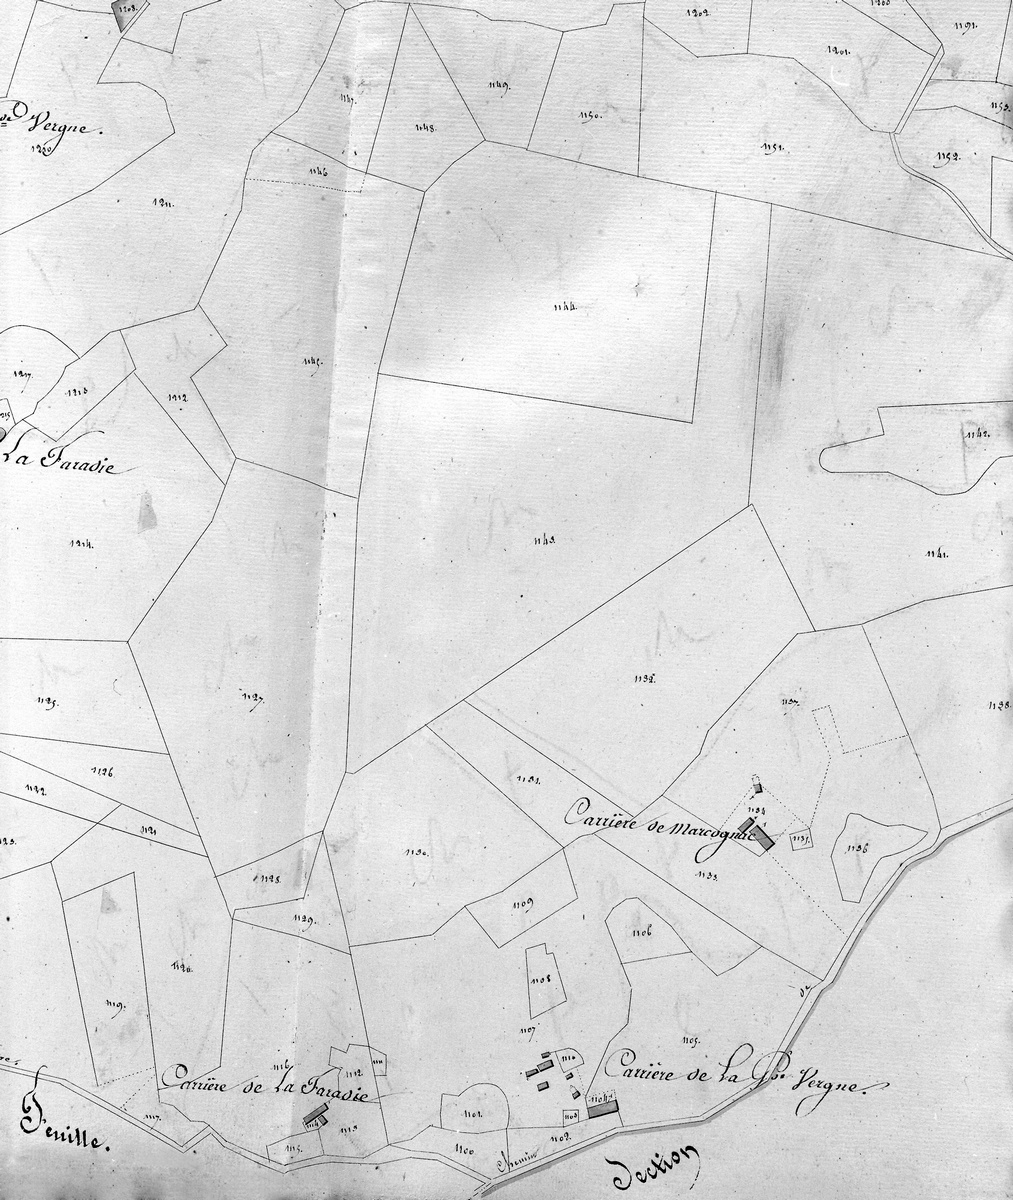 Extrait du plan cadastral de Saint-Yrieix-la-Perche, section H 6, parcelles 1104-1110, 1824.